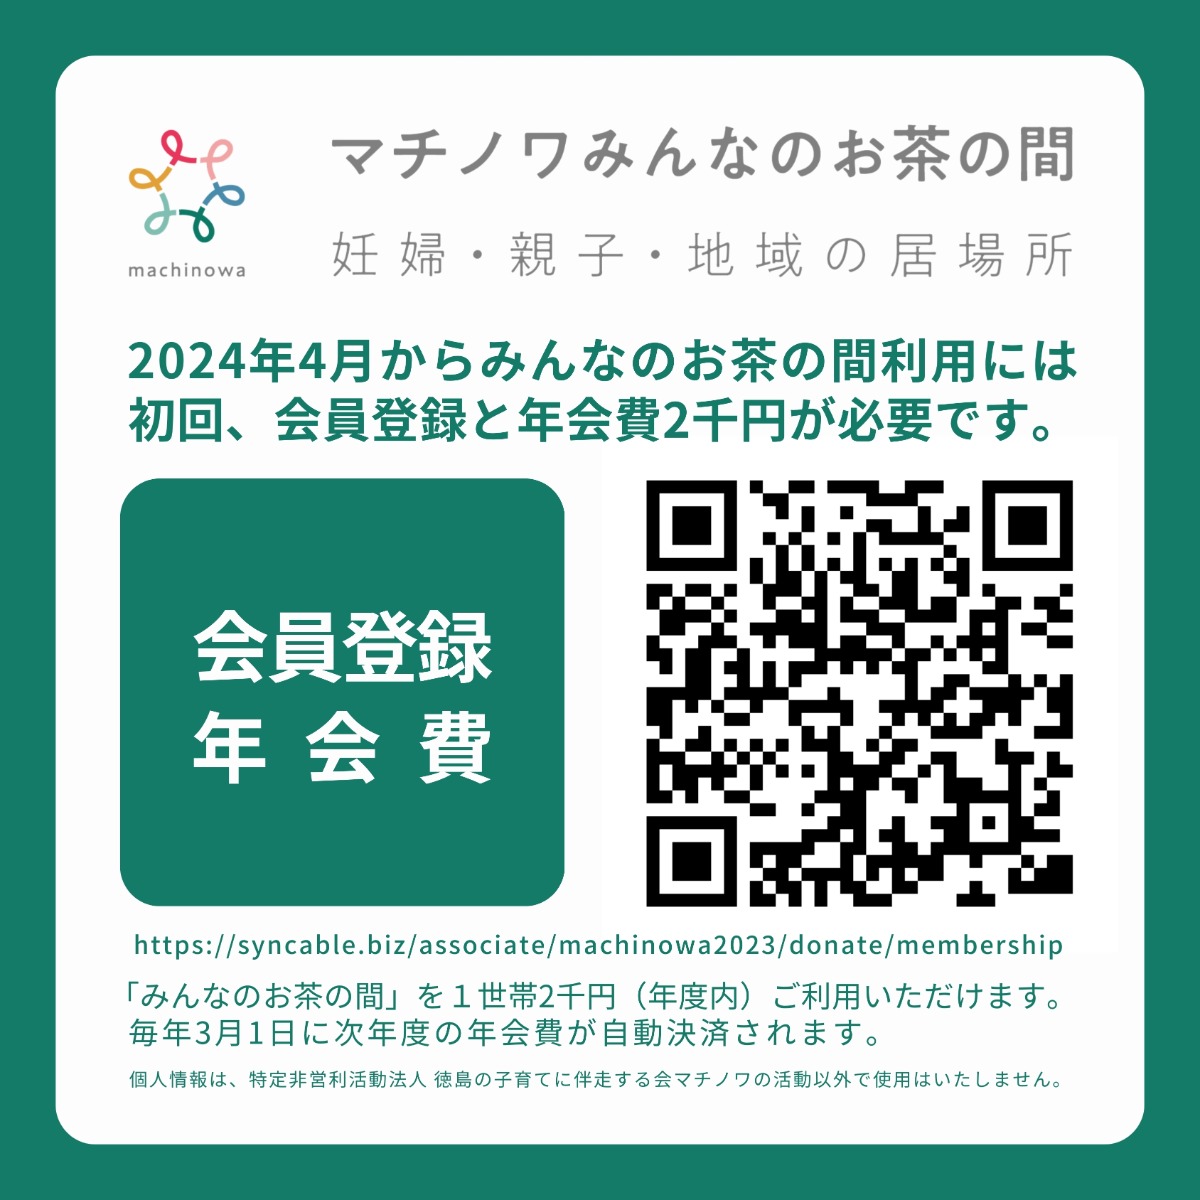 【徳島イベント情報】マチノワみんなのお茶の間 妊婦・親子・地域の居場所【4月】